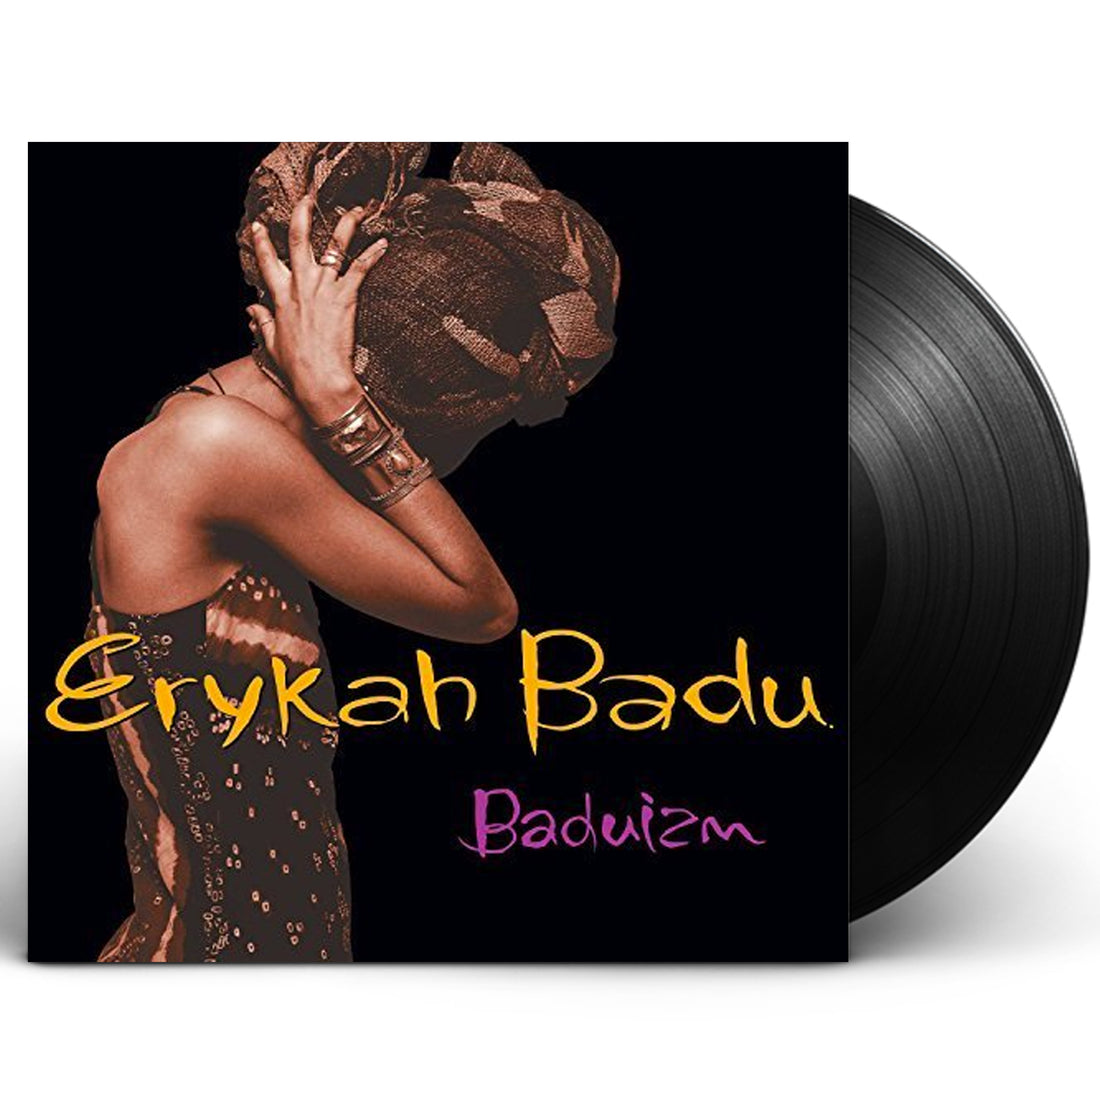 Erykah Badu - "Baduizm" 2xLP Vinyl